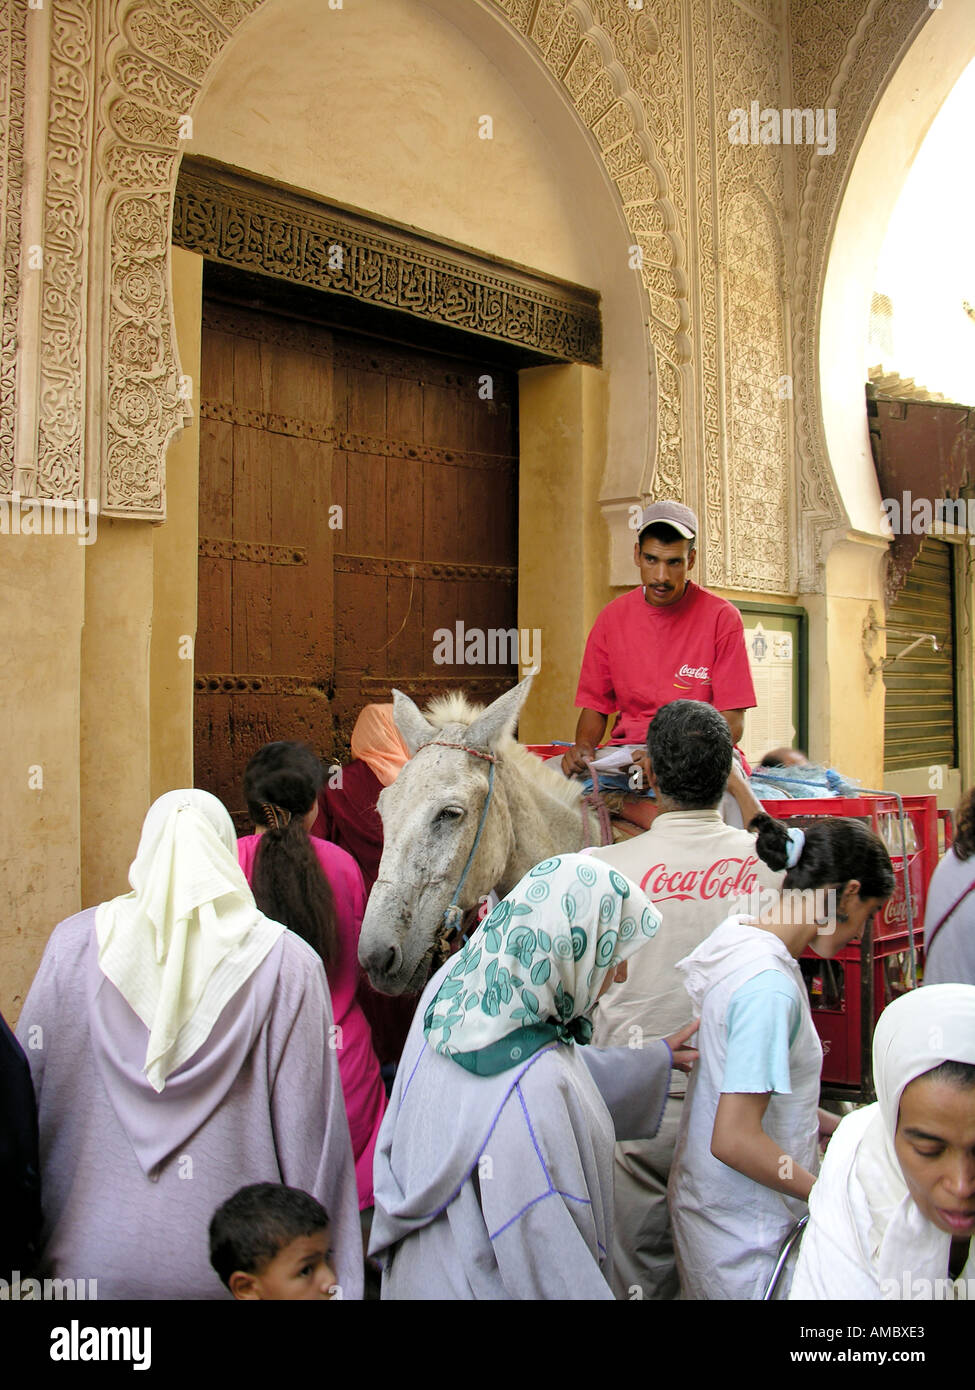 Fez Fes in Morocco zoco medina Stock Photo